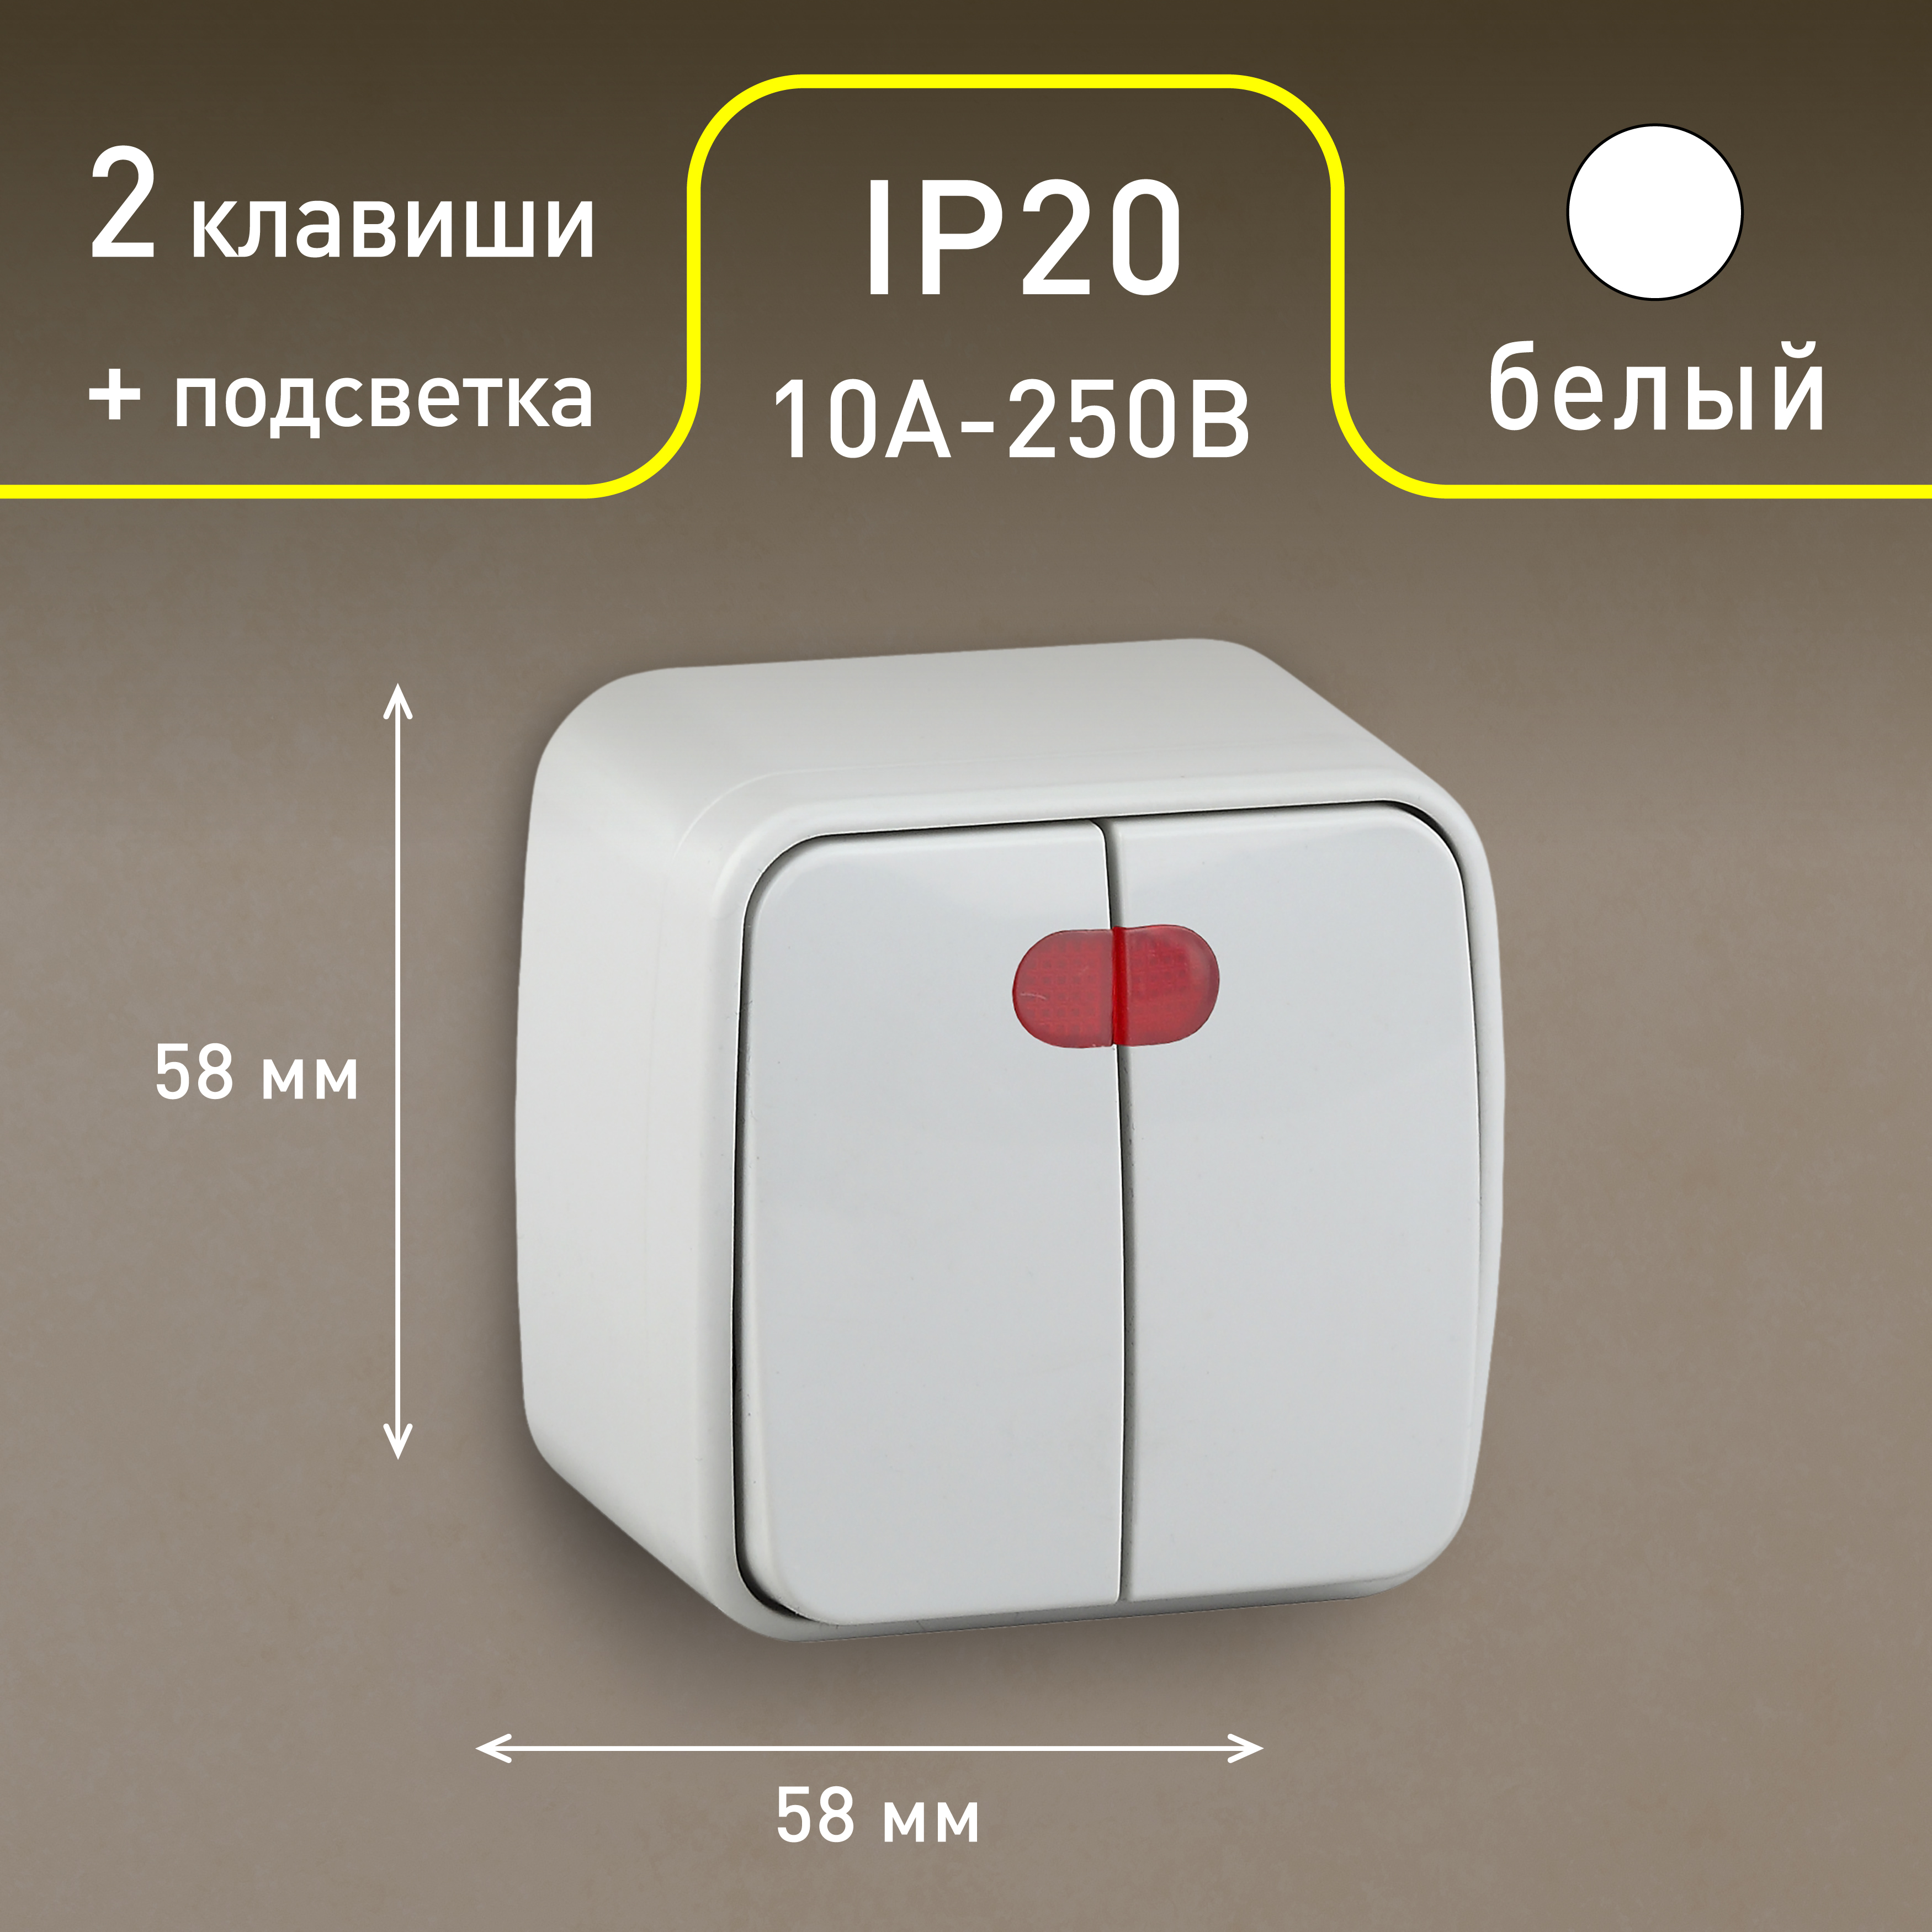 3-105-01 Intro Выключатель двойной с подсветкой, 10А-250В, IP20, ОУ, Polo, белый (18/360/4320)